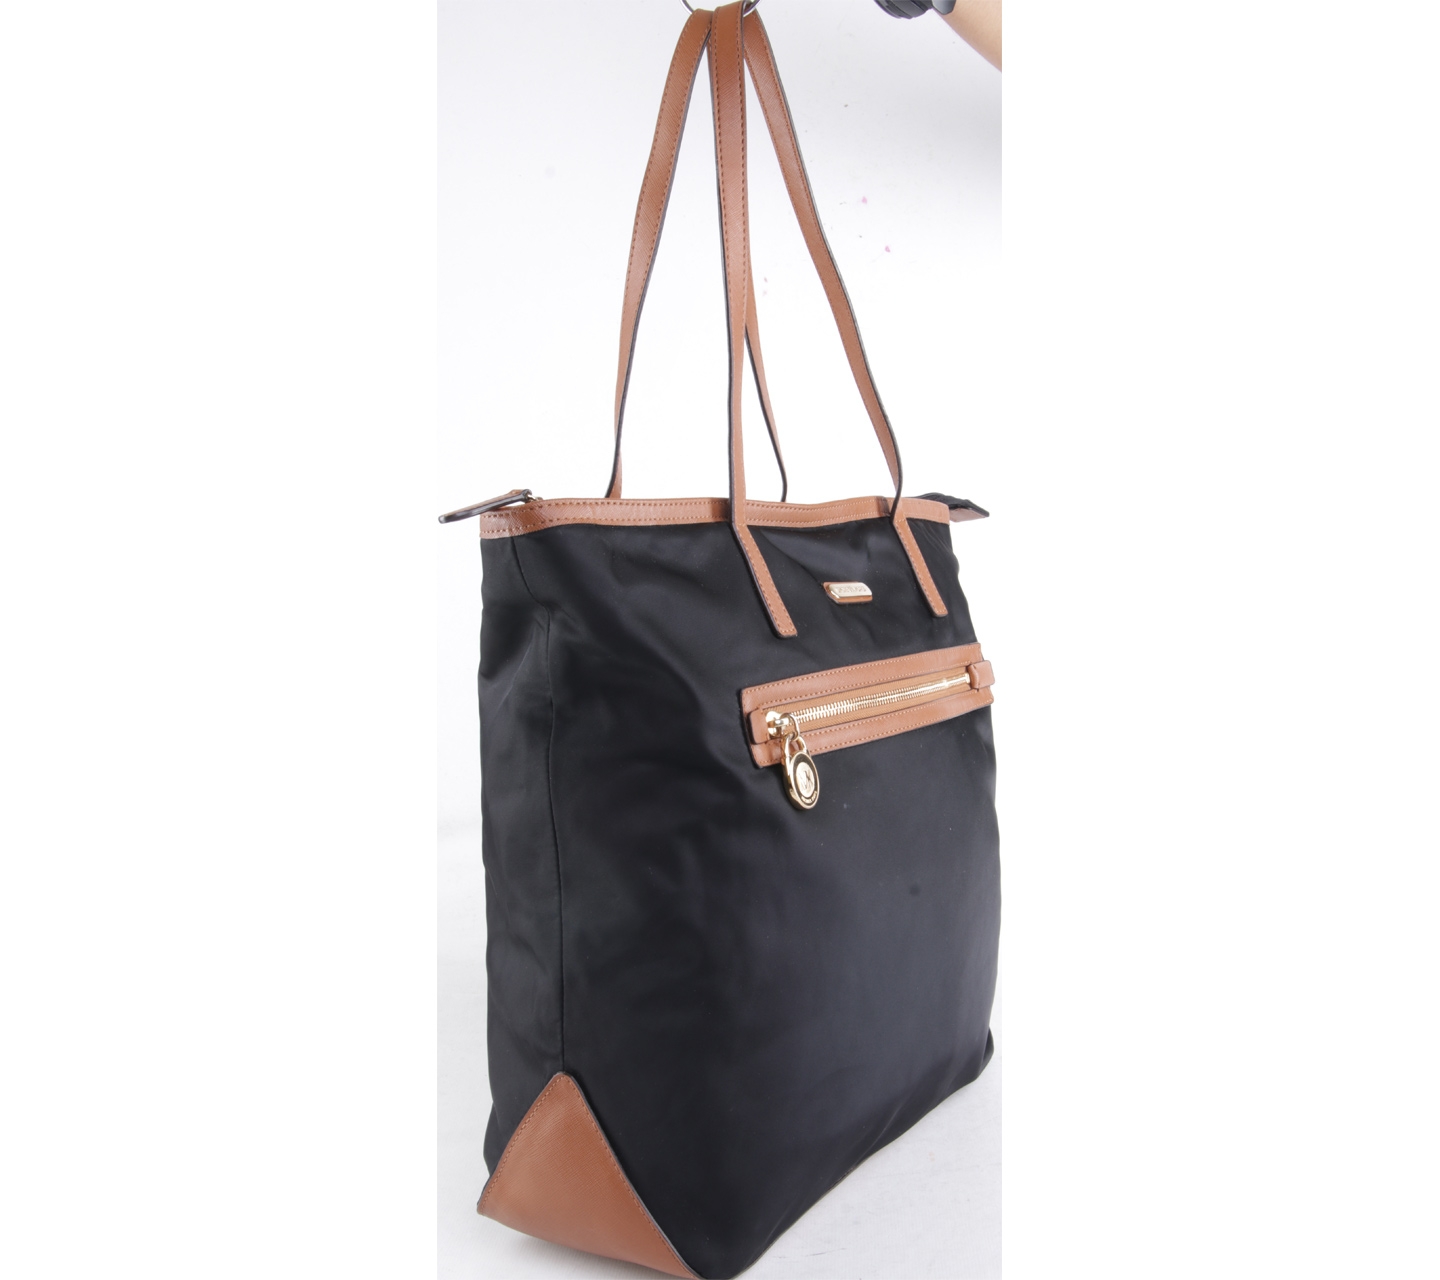 Michael Kors Black & Brown Tote Bag